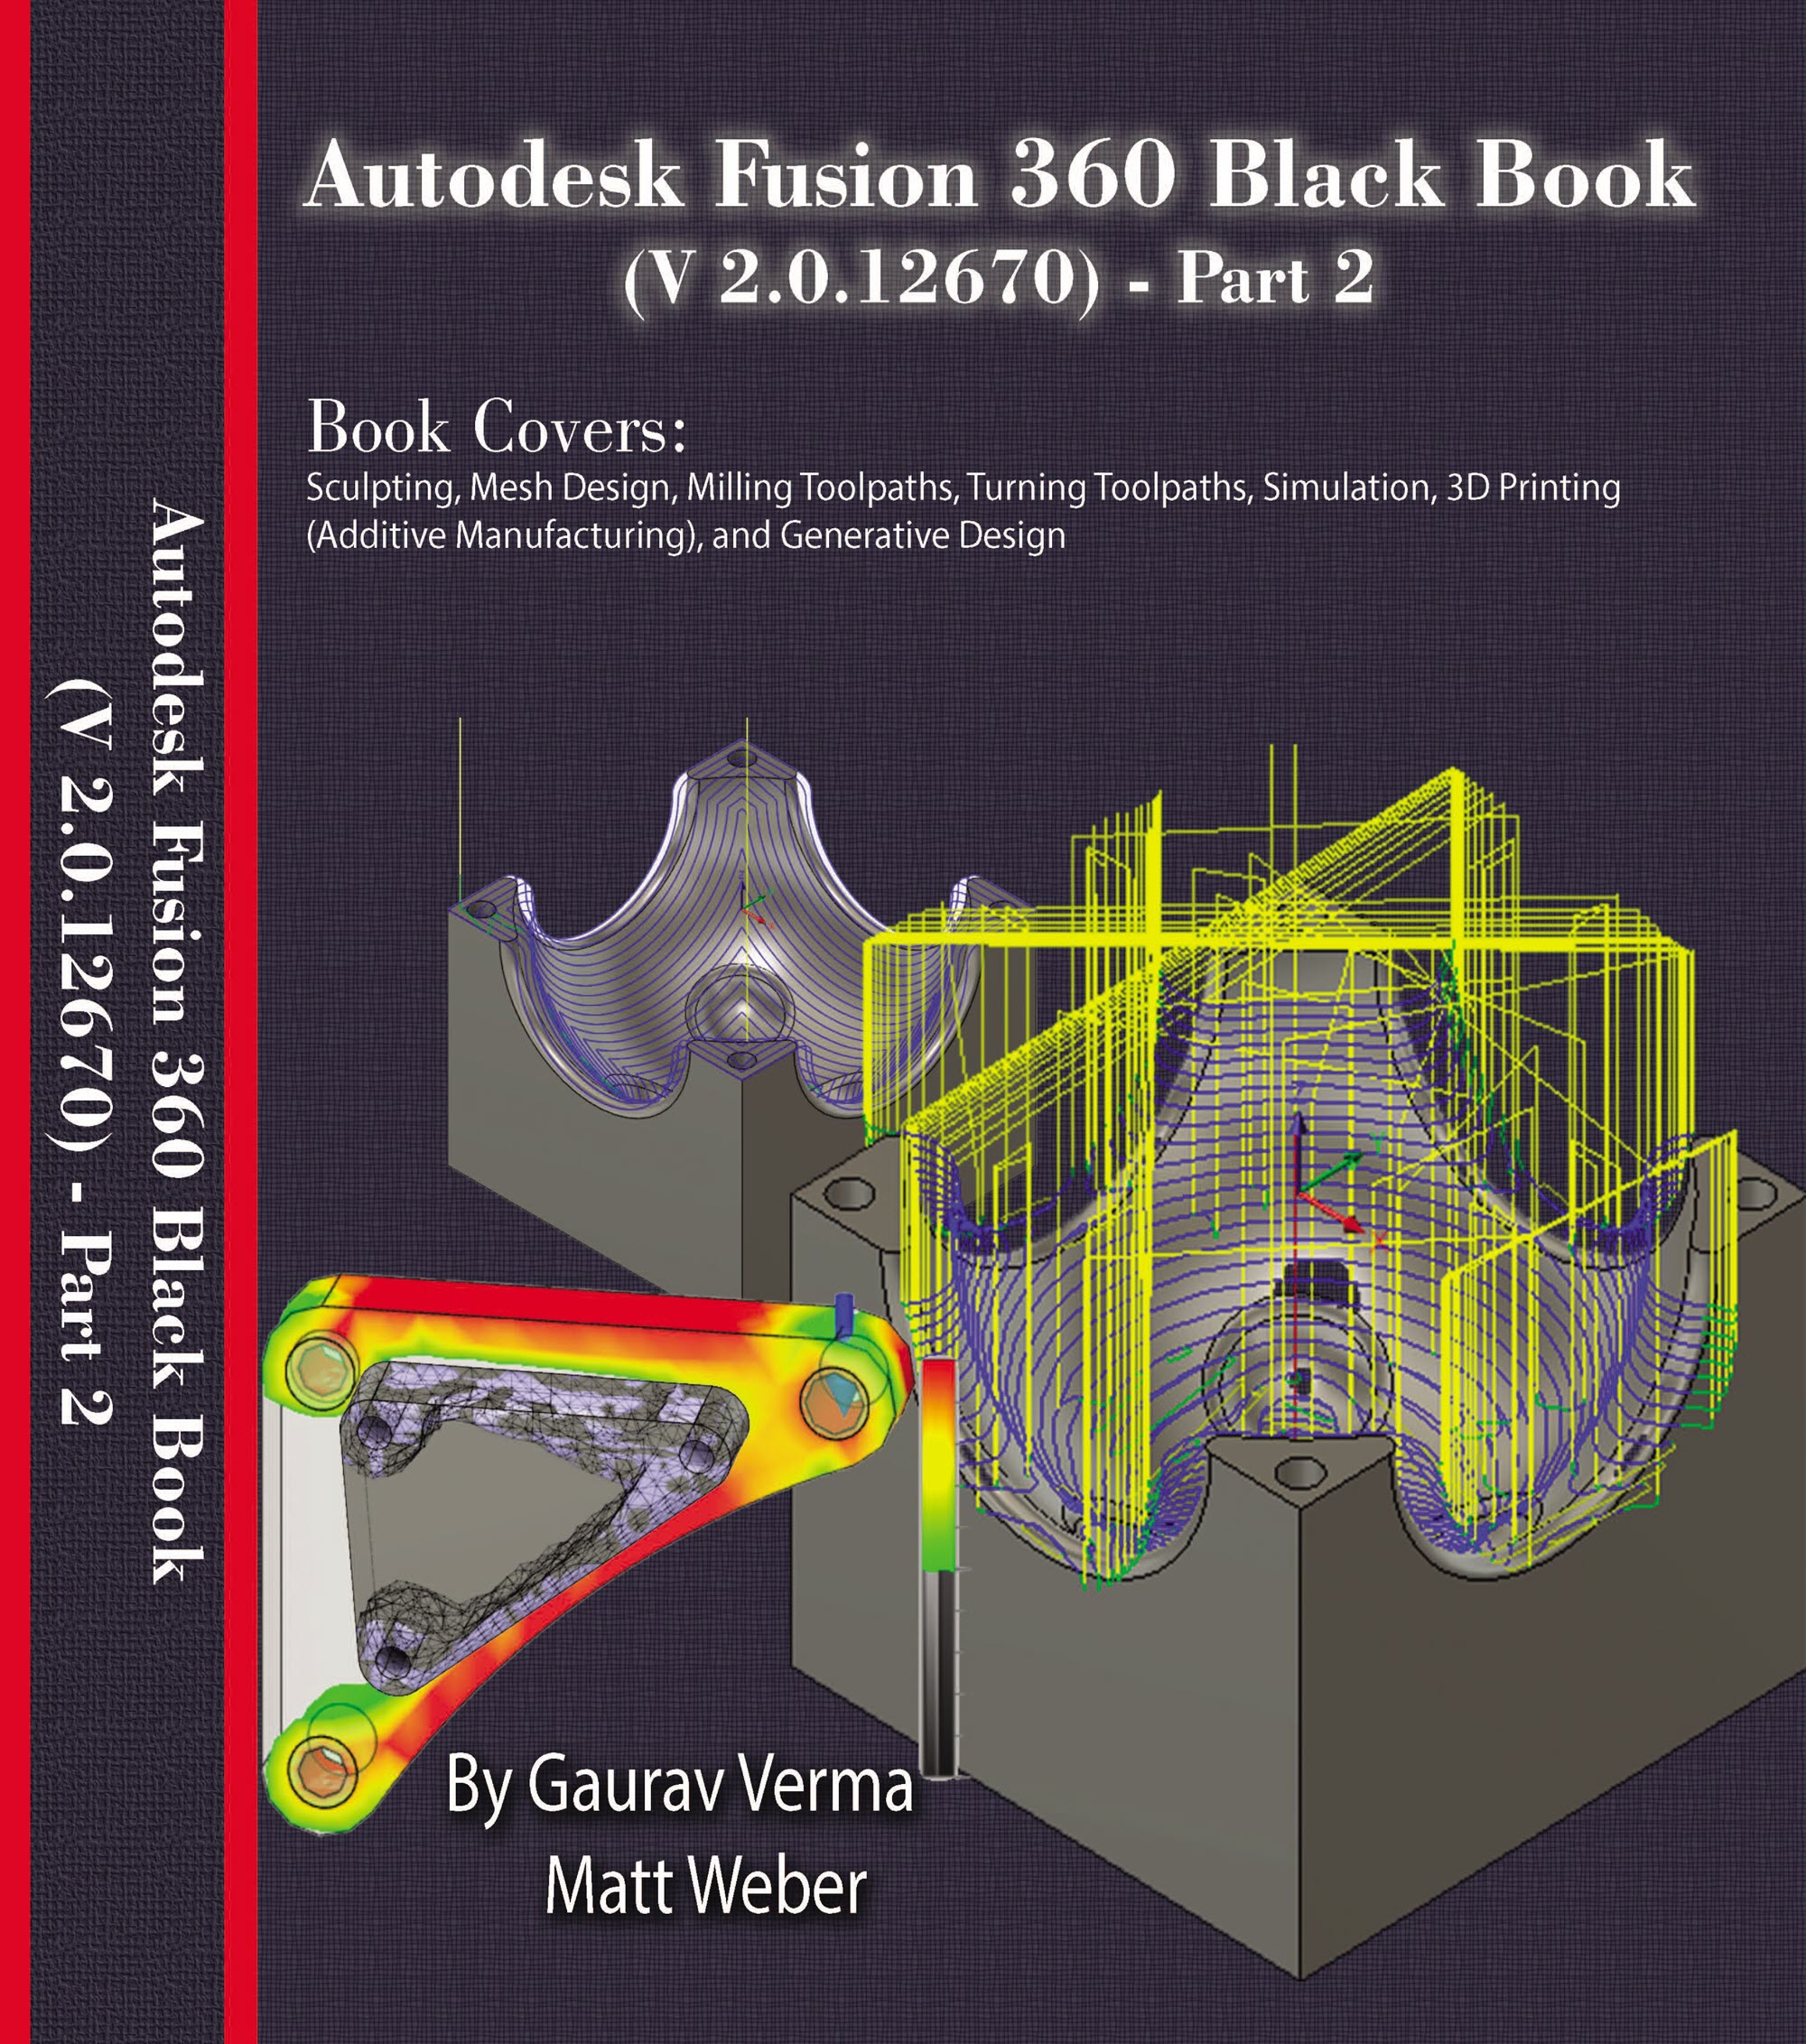 Autodesk Fusion 360 Black Book part 2